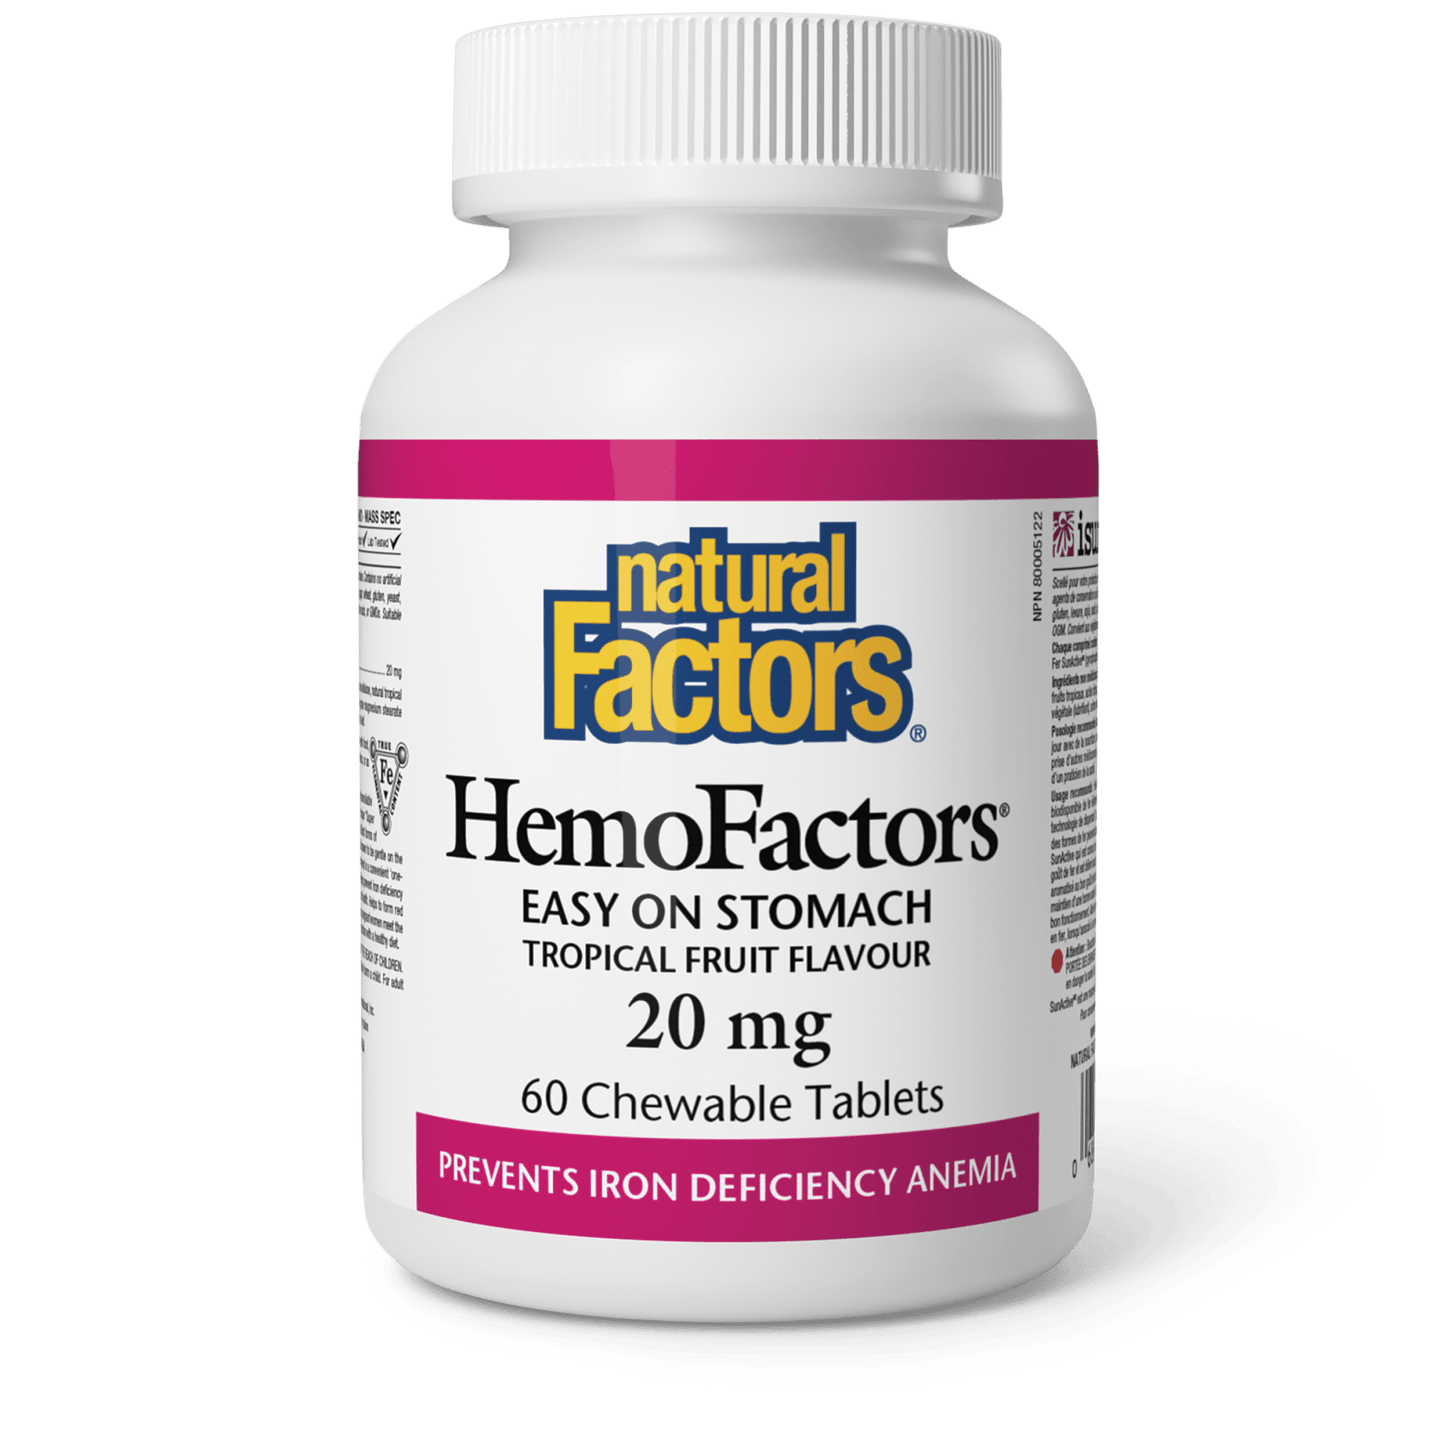 HemoFactors 20 mg, Natural Factors|v|image|1647